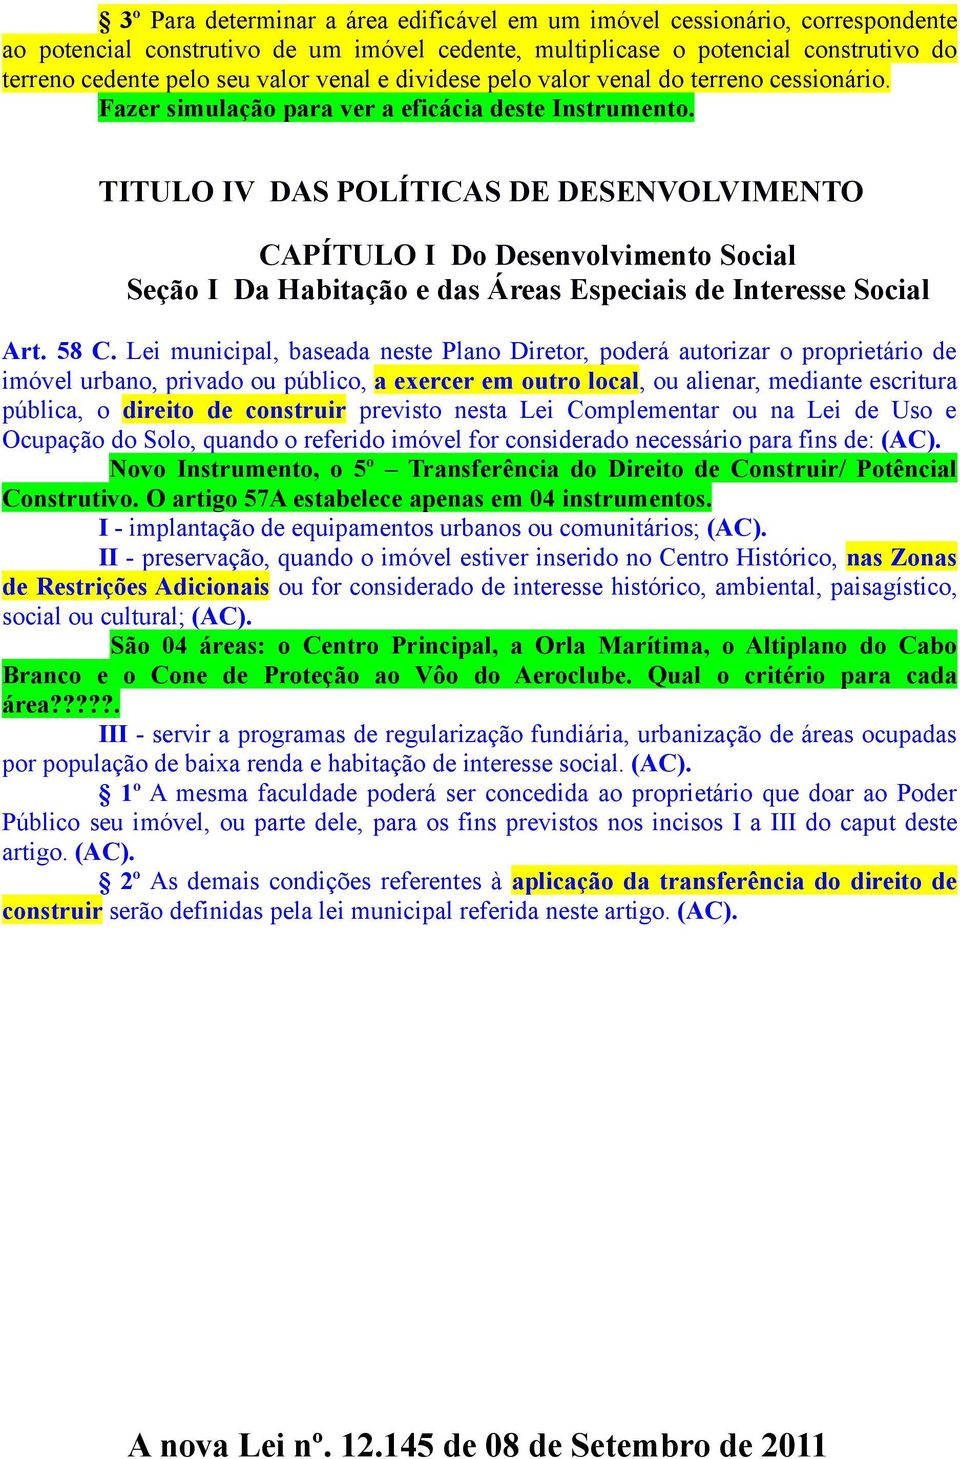 TITULO IV DAS POLÍTICAS DE DESENVOLVIMENTO CAPÍTULO I Do Desenvolvimento Social Seção I Da Habitação e das Áreas Especiais de Interesse Social Art. 58 C.